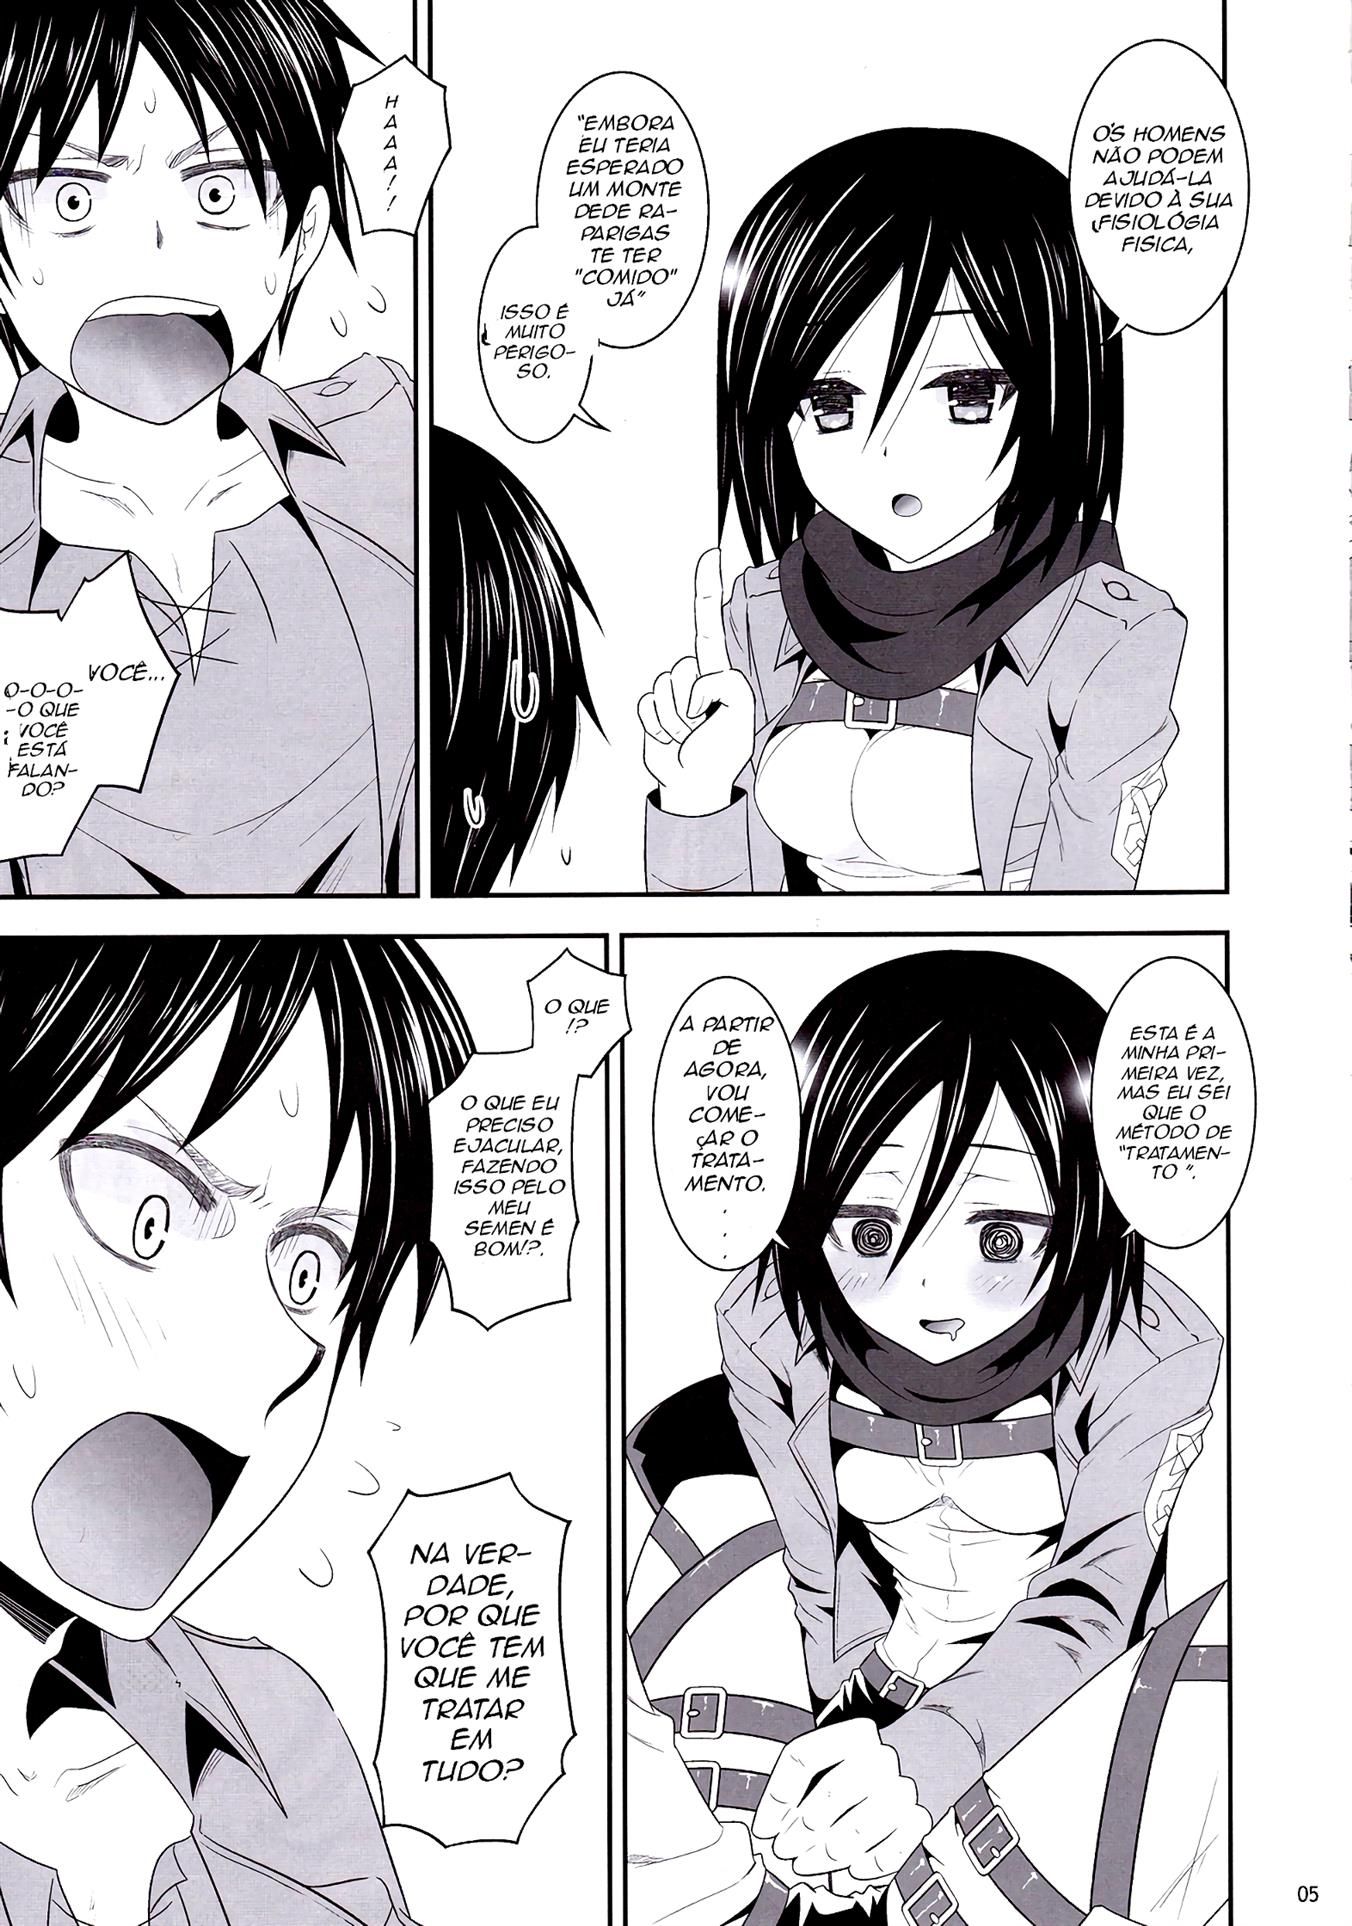 O tratamento da Mikasa